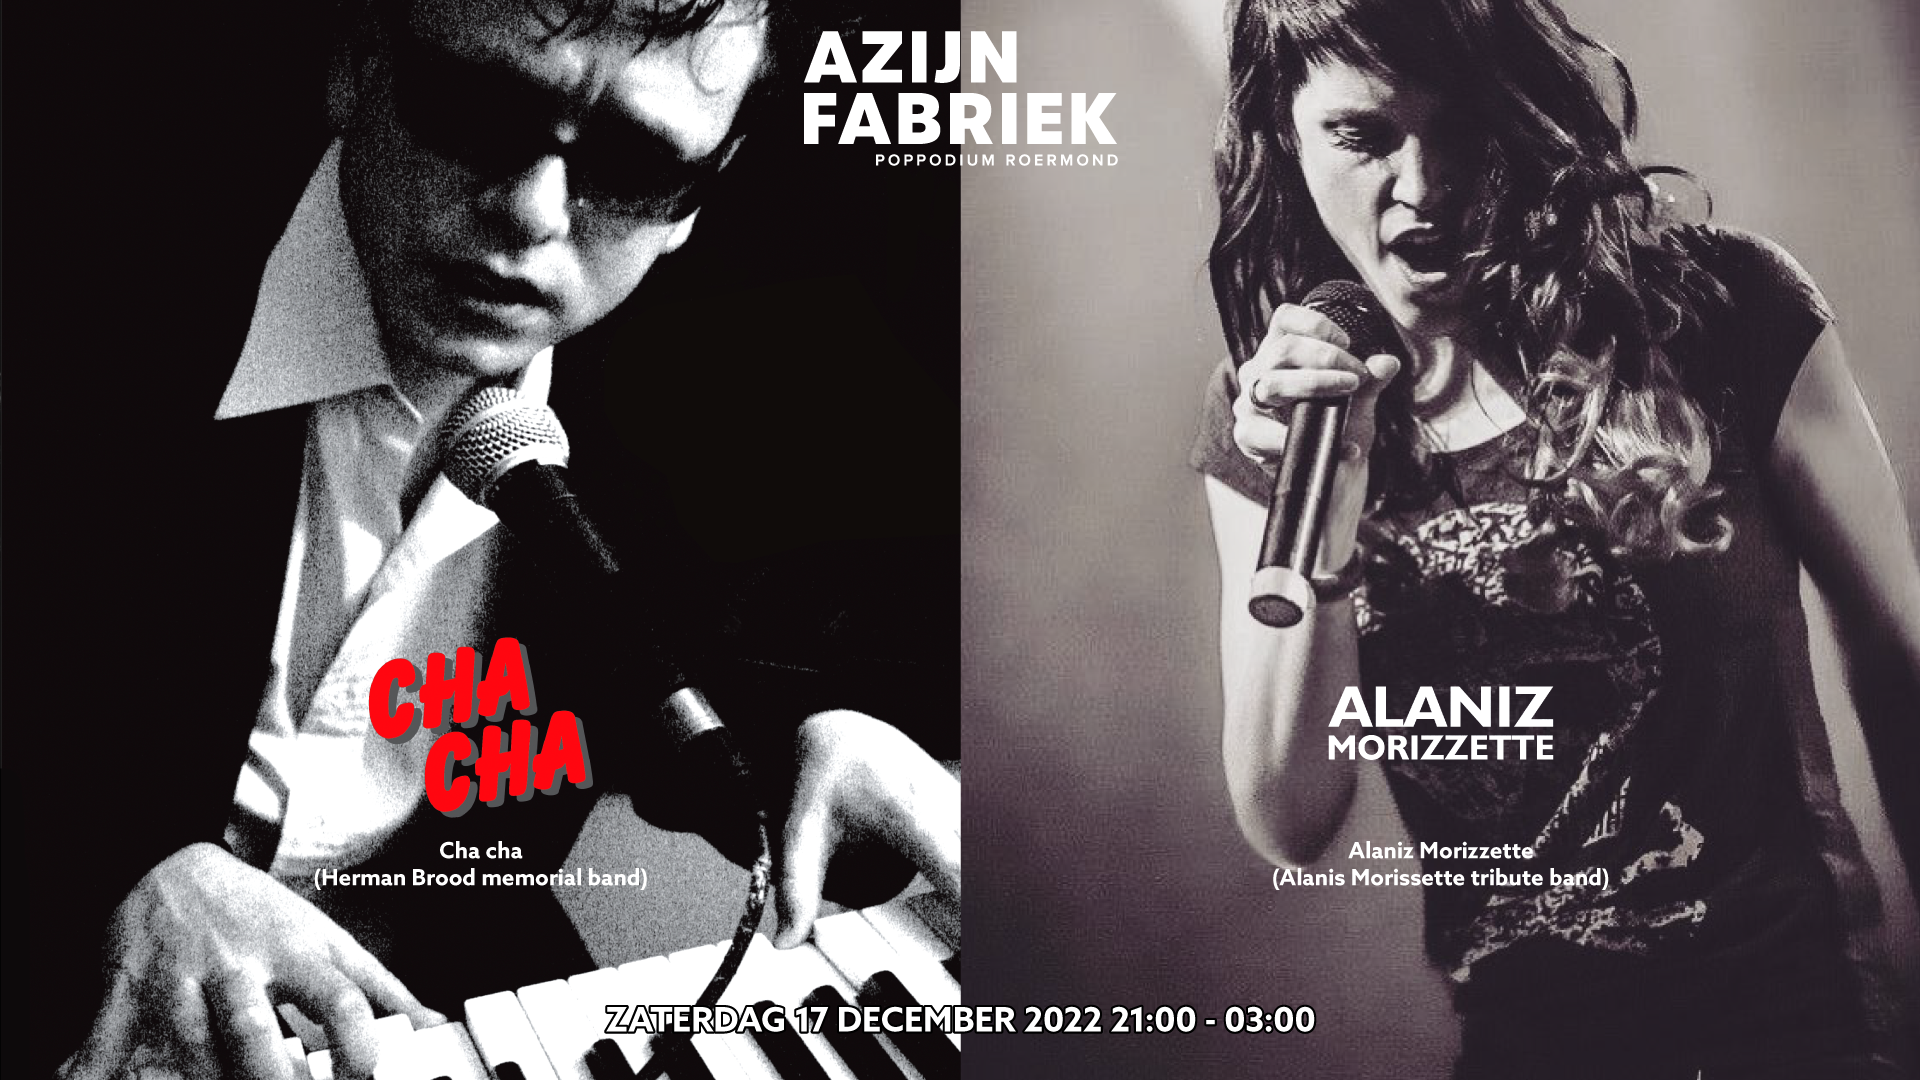 Azijnfabriek | Concert - Herman Brood memorial band "Cha cha" en Alaniz Morizzette (tribute)